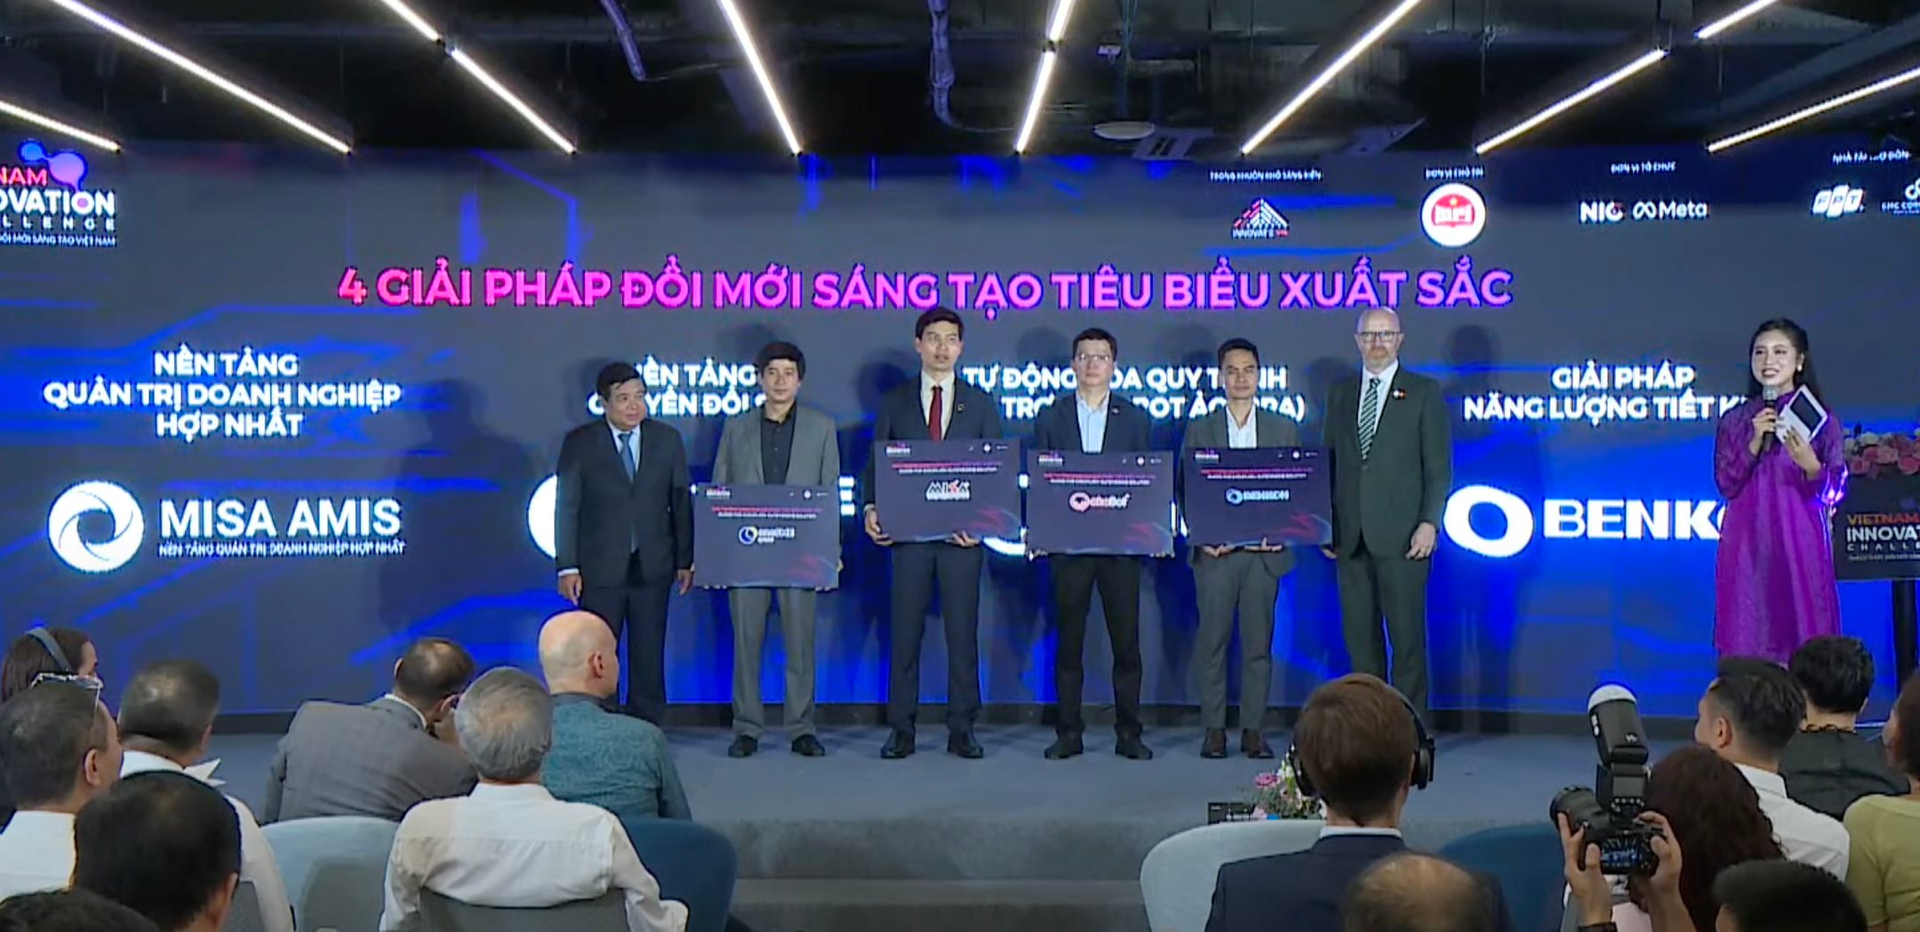 Lộ diện 4 giải pháp đổi mới sáng tạo xuất sắc nhất Việt Nam: FPT, VNPT, Misa cùng startup tối ưu vận hành điều hòa Benkon được vinh danh